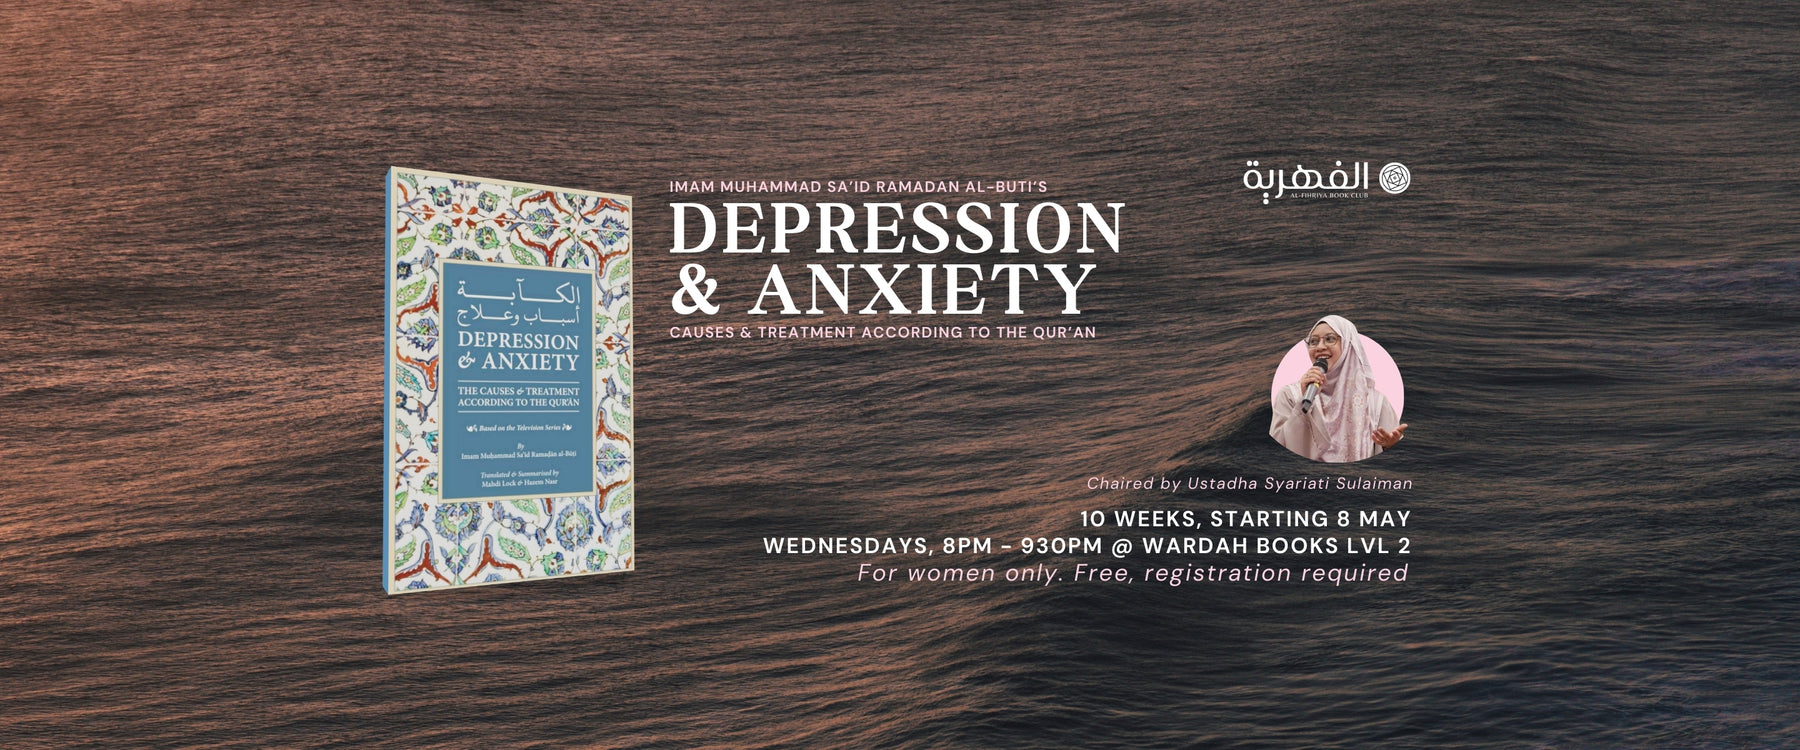 Al-Fihriya Book Club: Depression & Anxiety